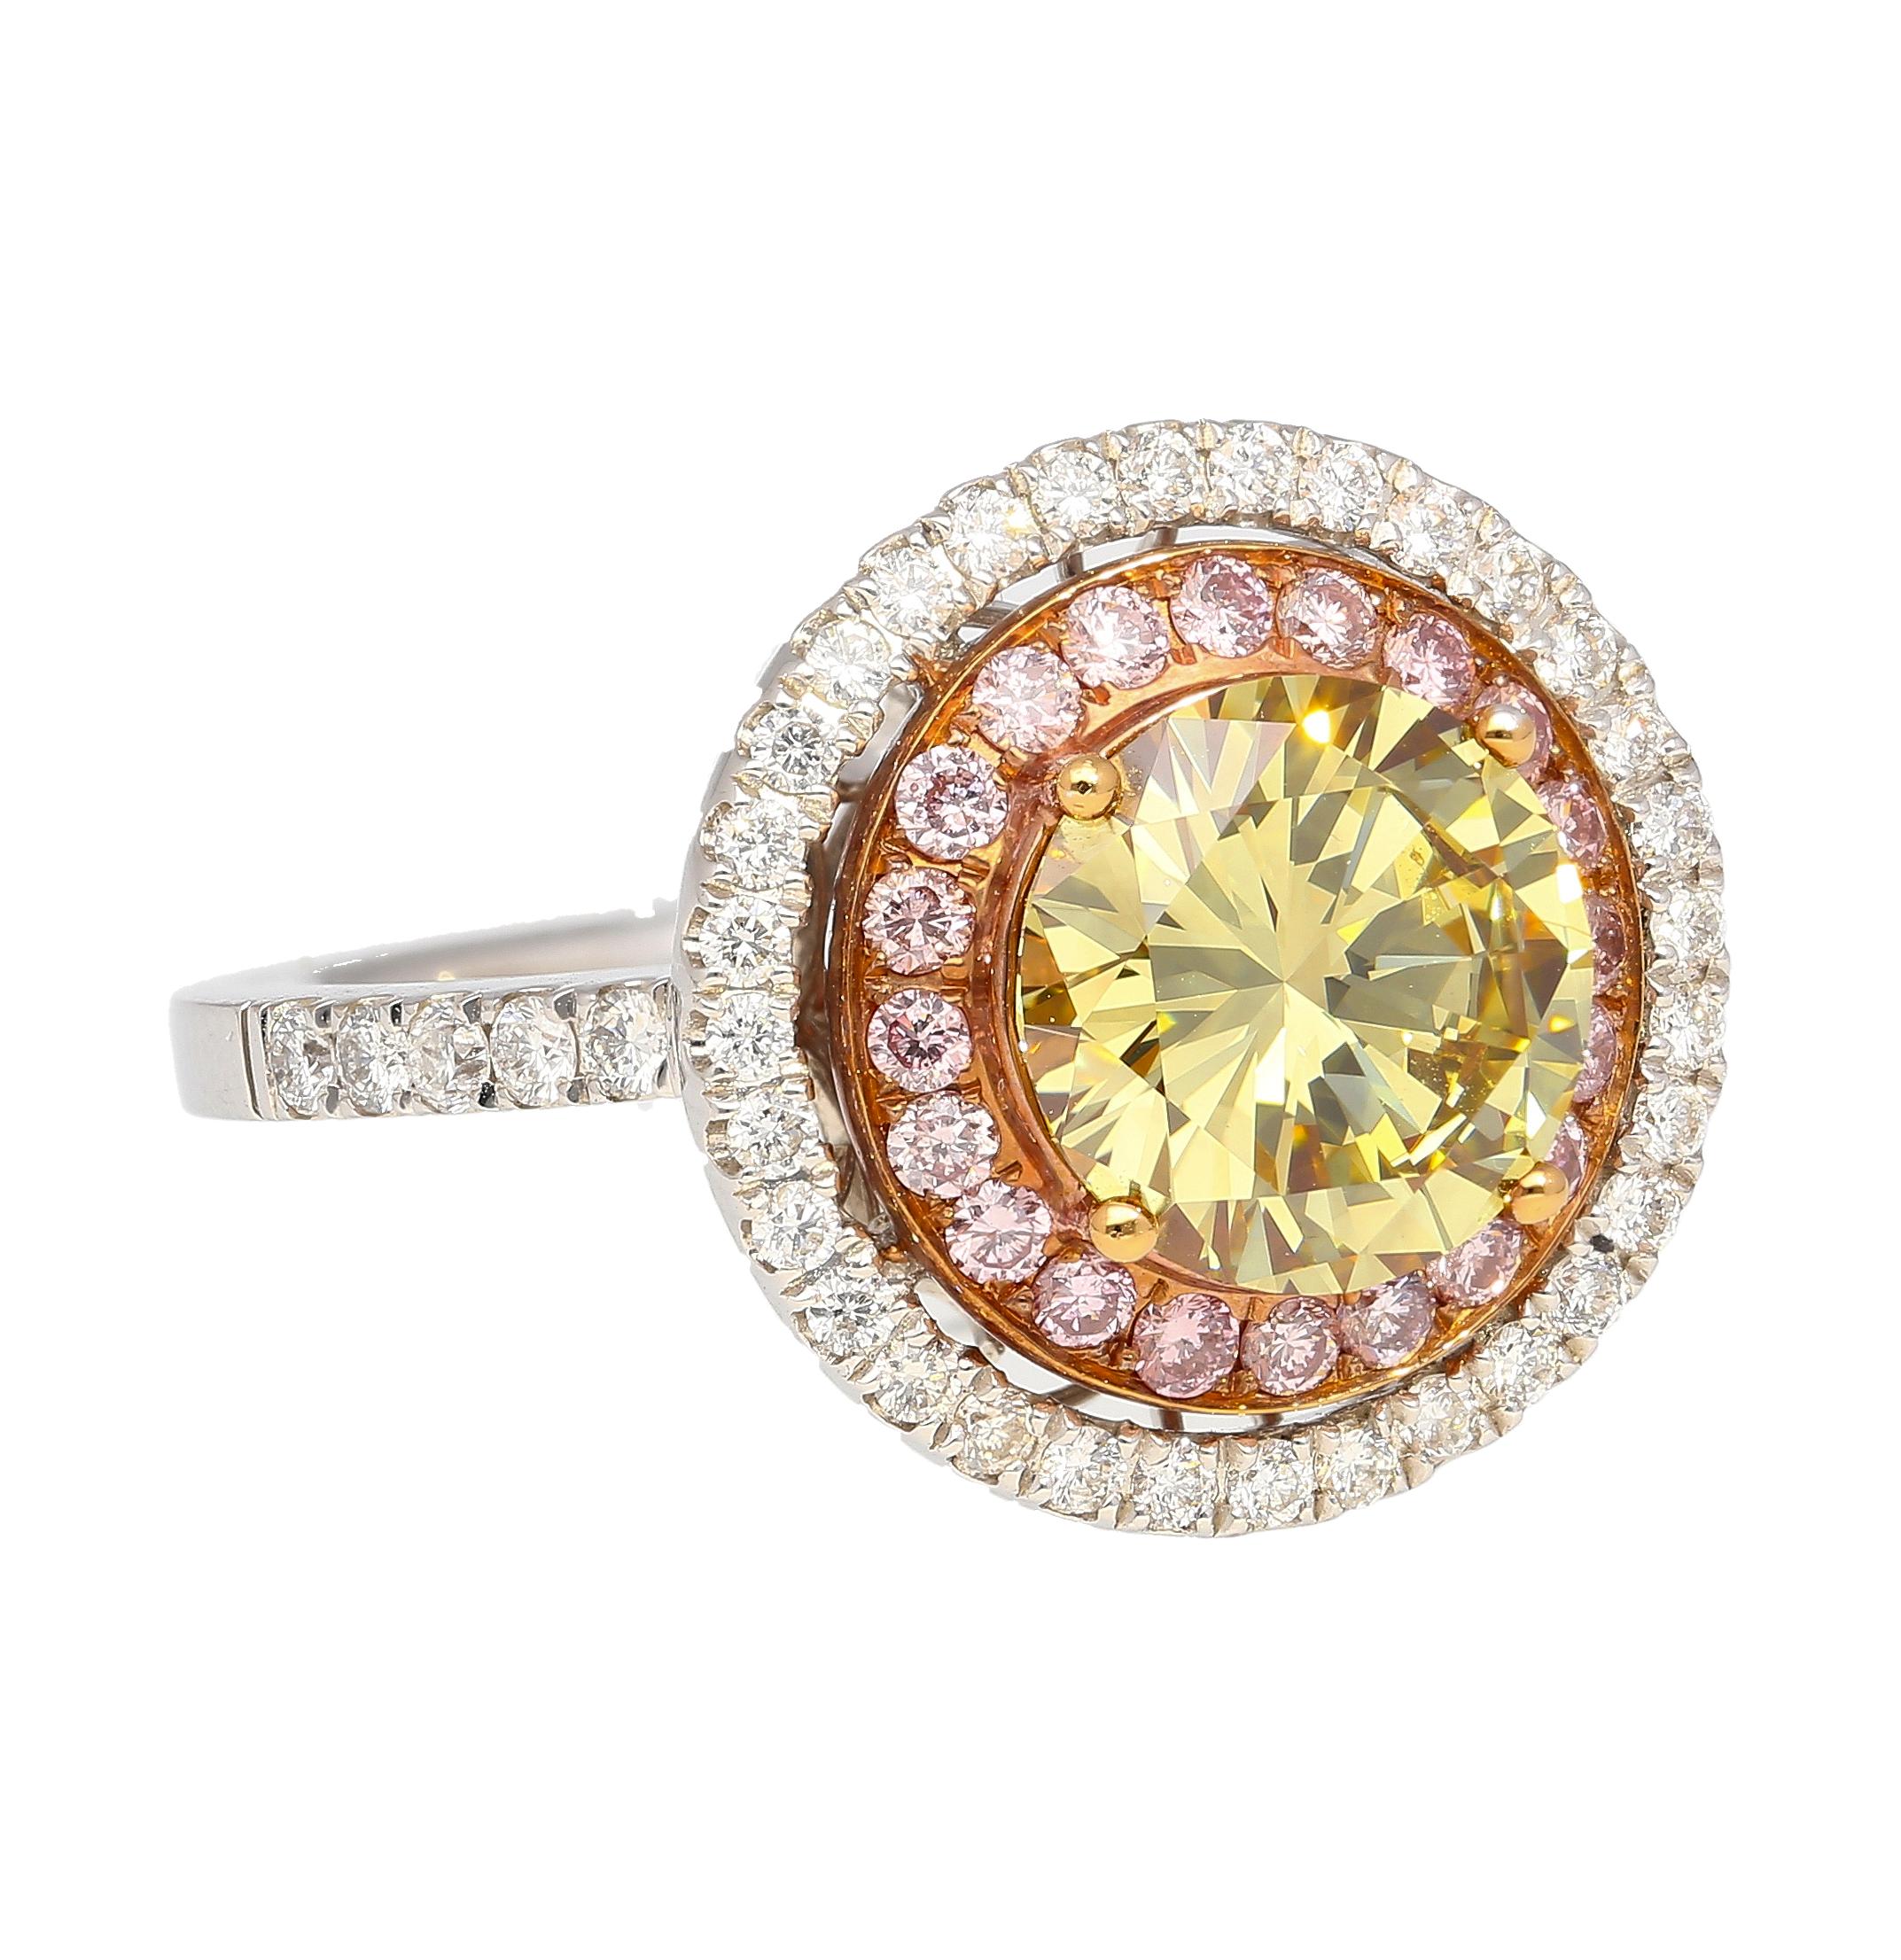 2.3 carat diamond ring price